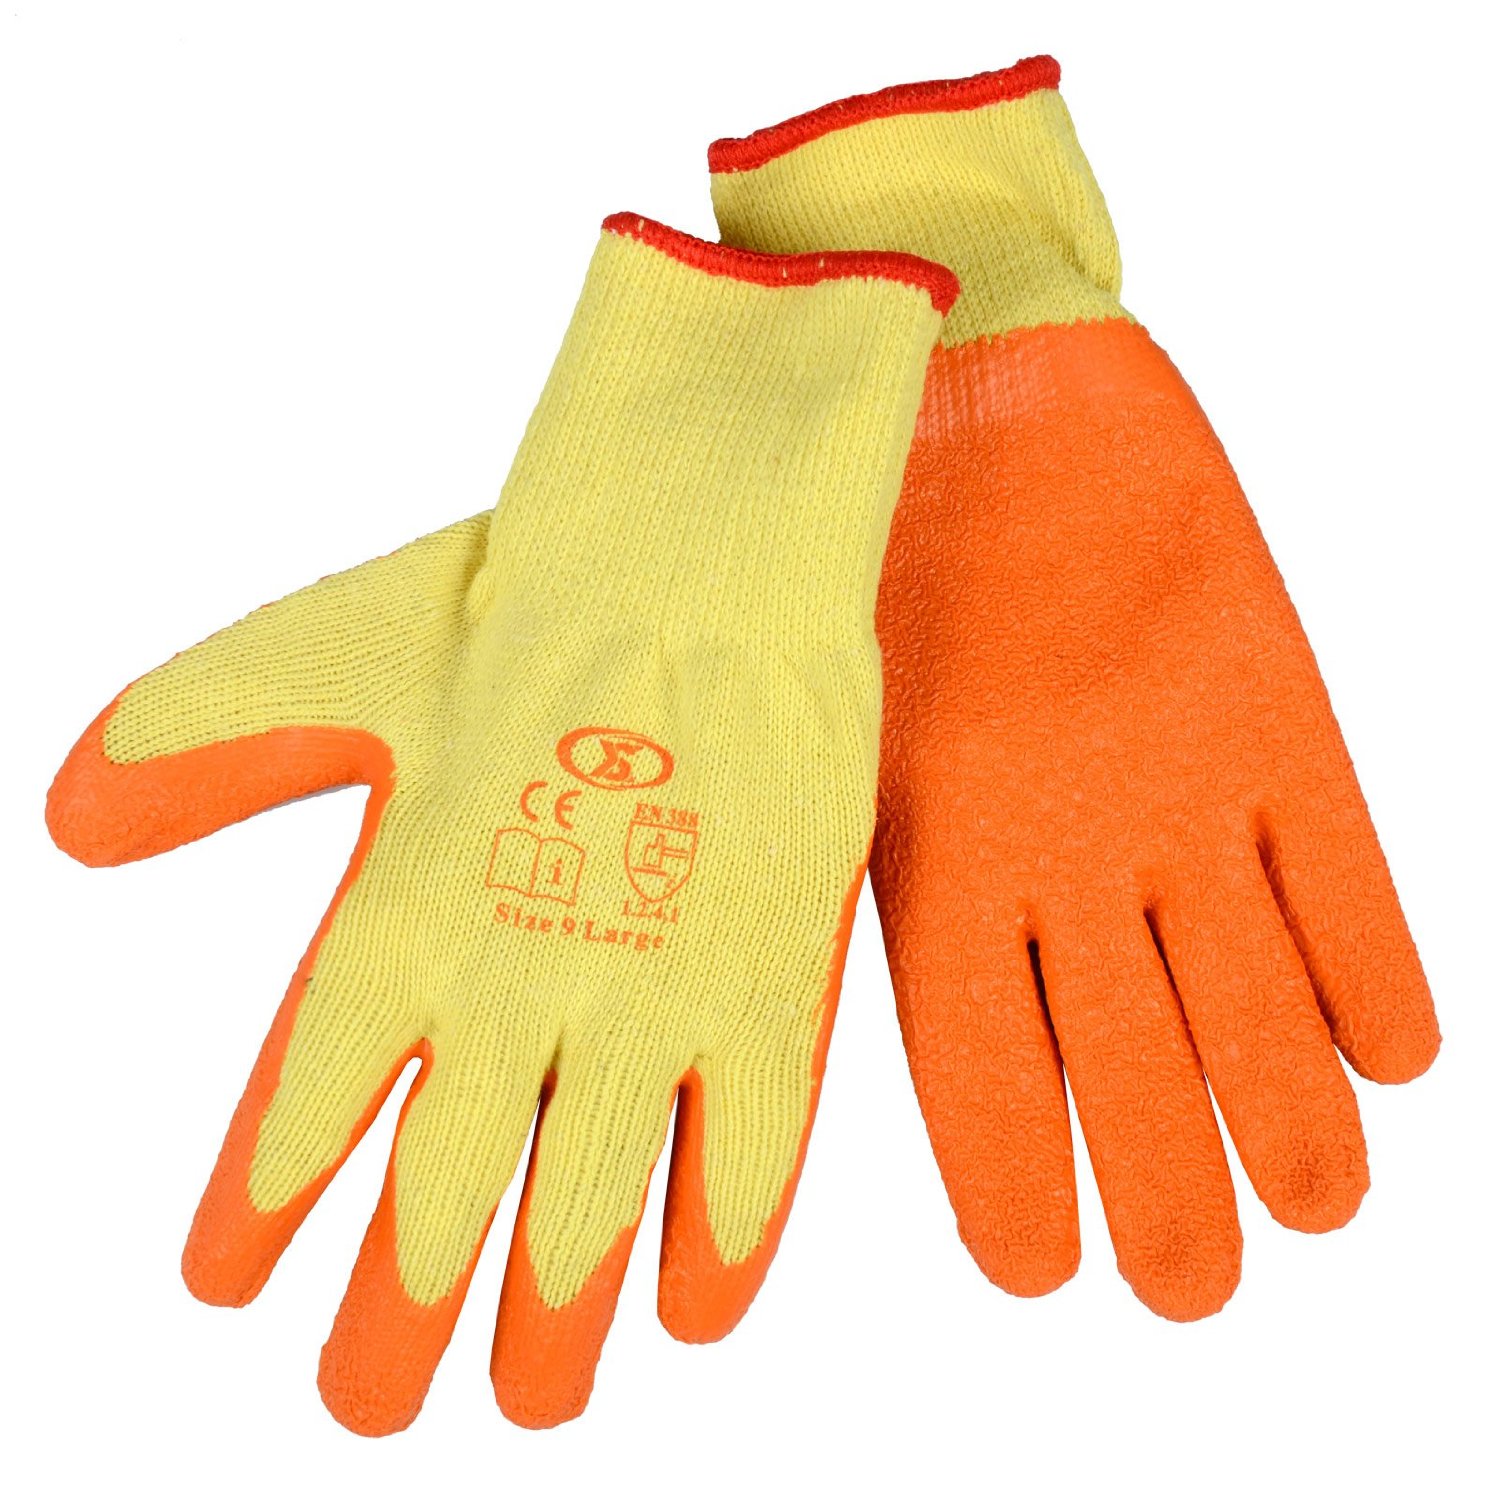 Latex Coated Orange Gloves - Size 9